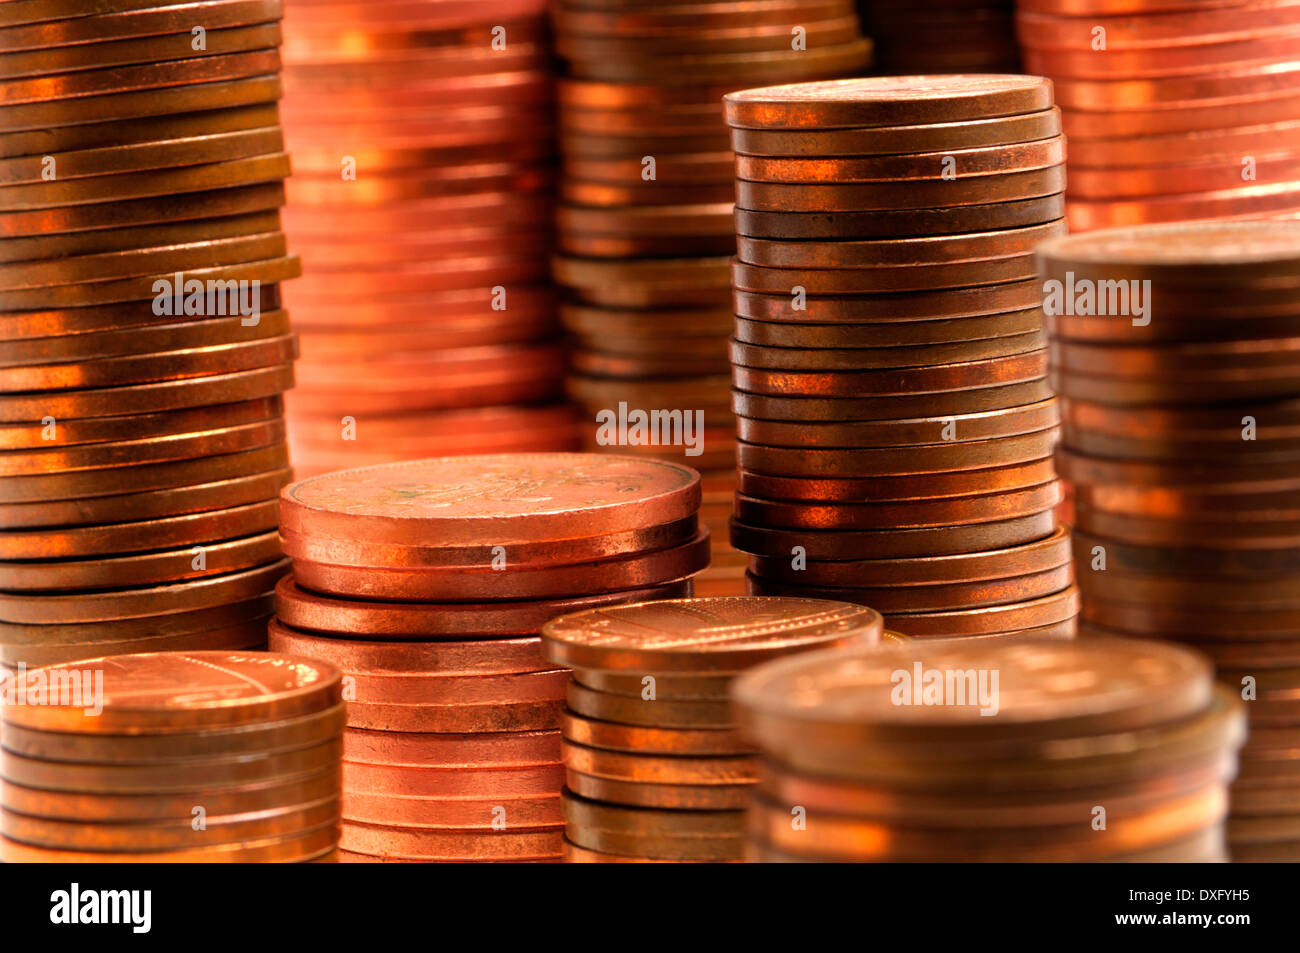 Haufen von Münzen (britische 1 p und 2p) Stockfoto